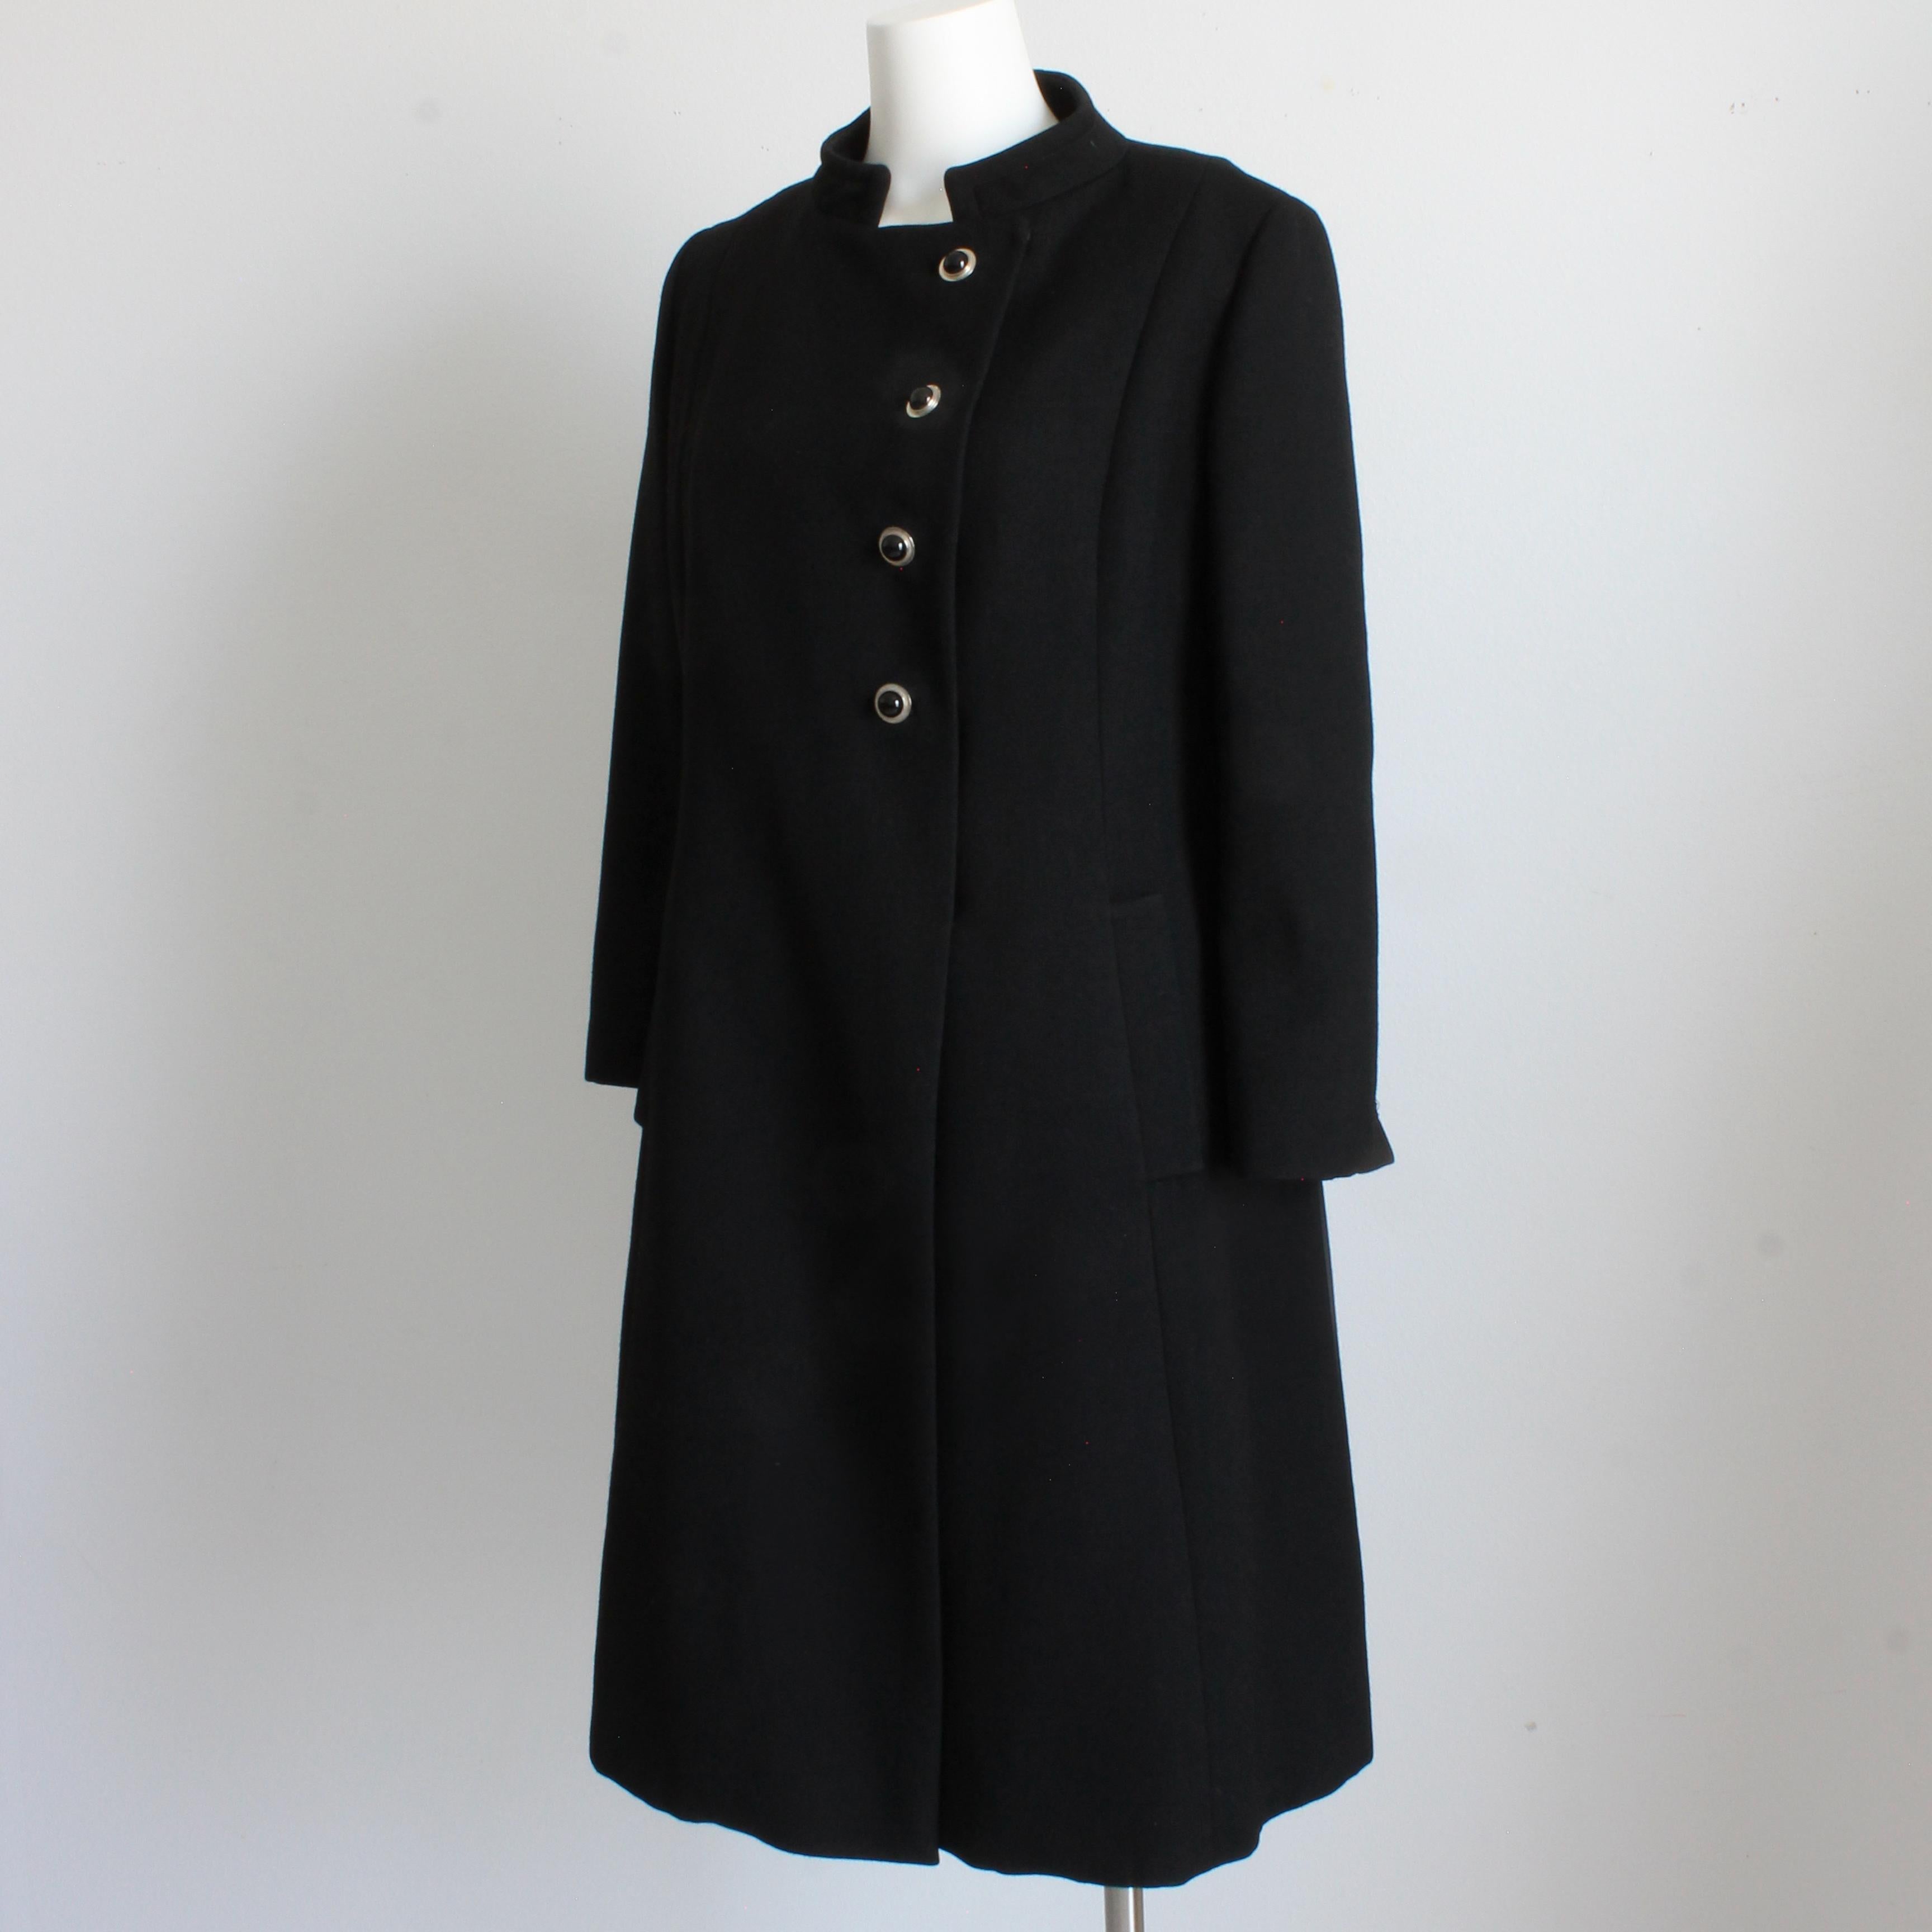 50s style coat